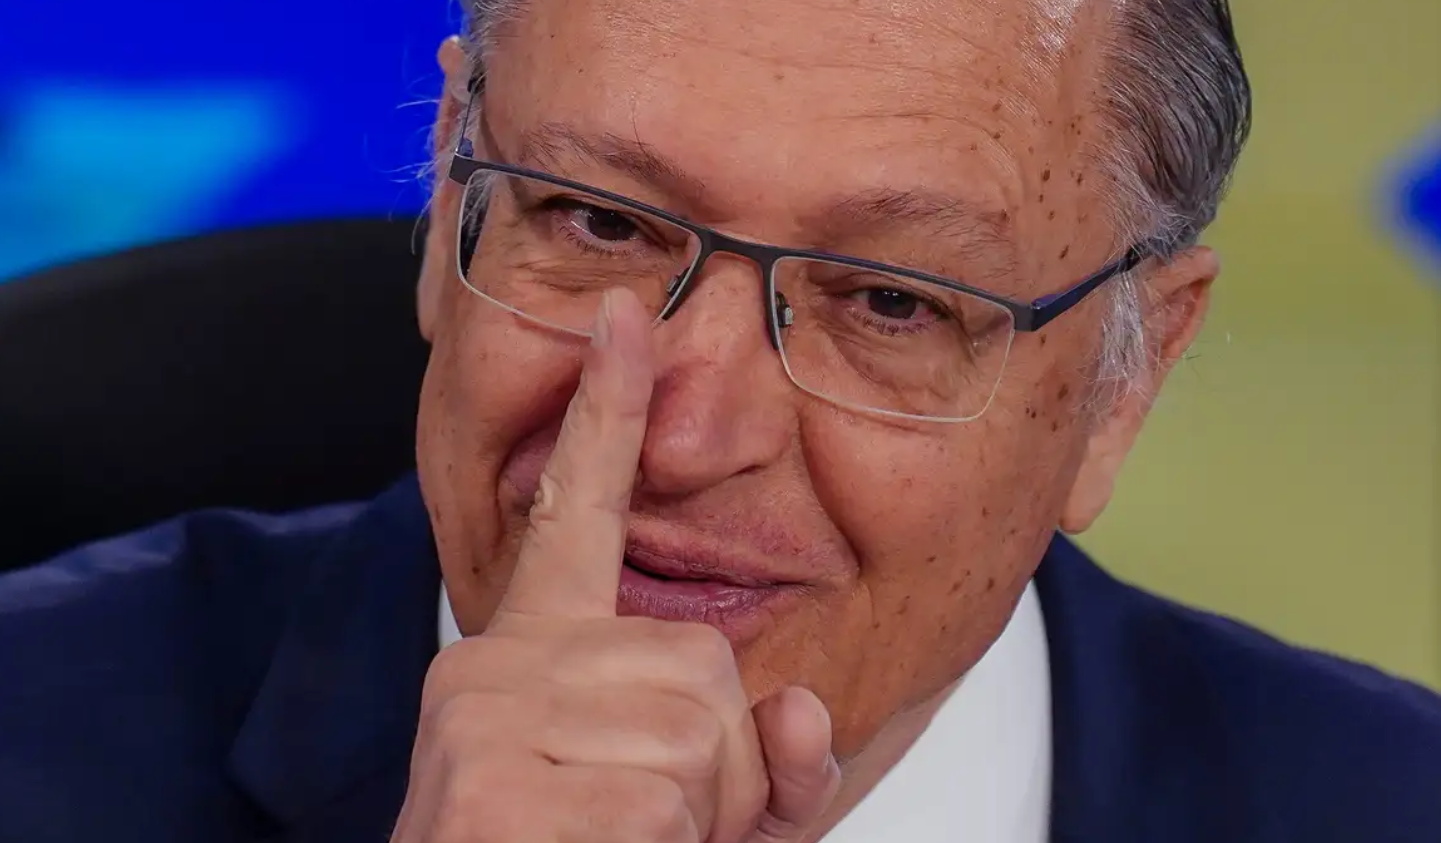 O vice-presidente da República e ministro do Desenvolvimento, Indústria, Comércio e Serviços, Geraldo Alckmin, falou nesta segunda-feira (27) sobre linhas de crédito para grandes empresas do Rio Grande do Sul